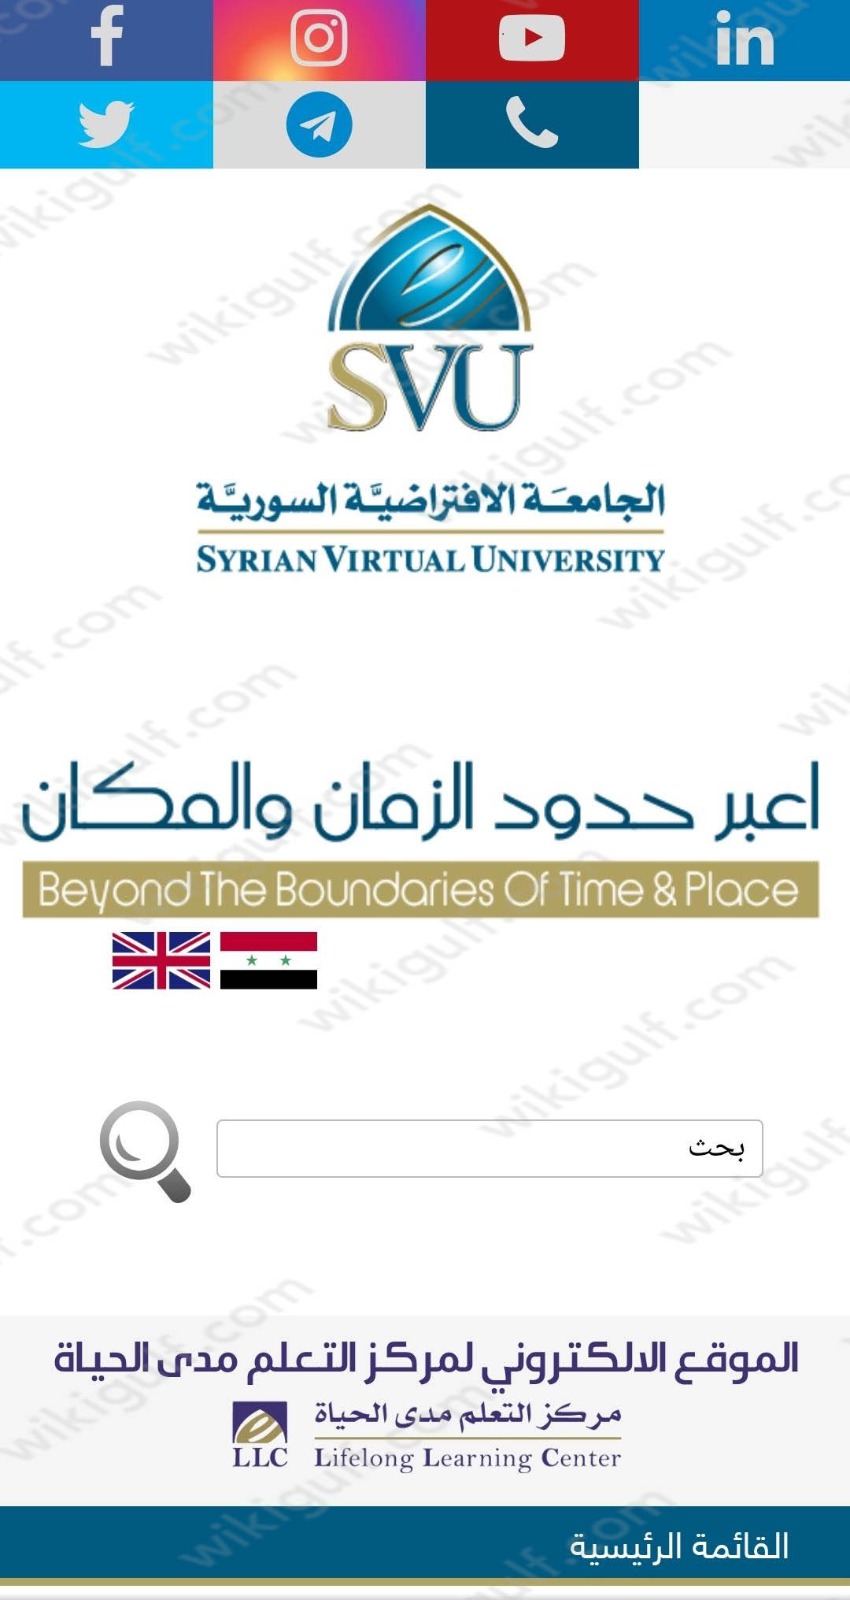 الجامعة الافتراضية السورية تسجيل دخول